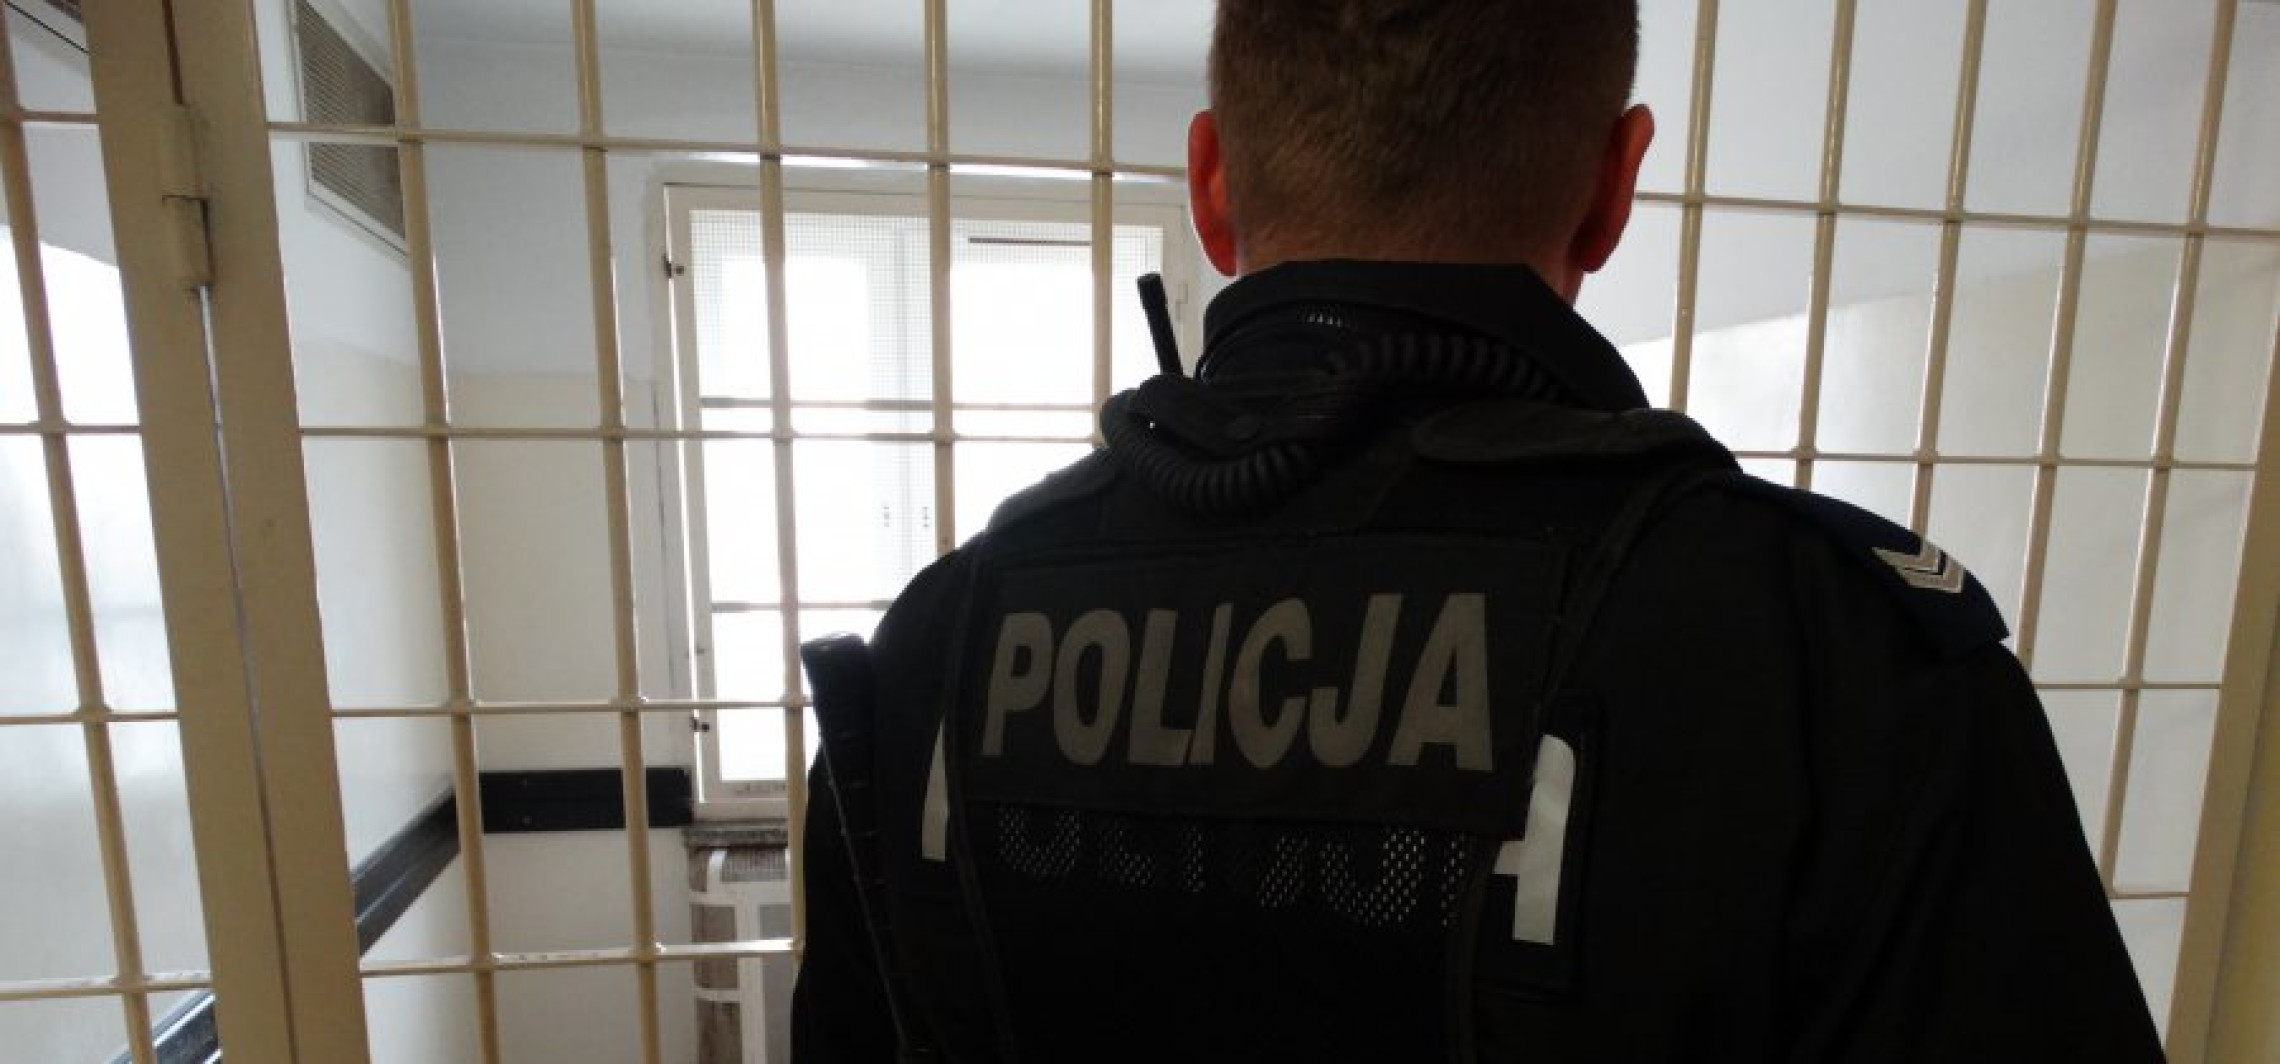 Inowrocław - Na Rąbinie cztery osoby wpadły z narkotykami